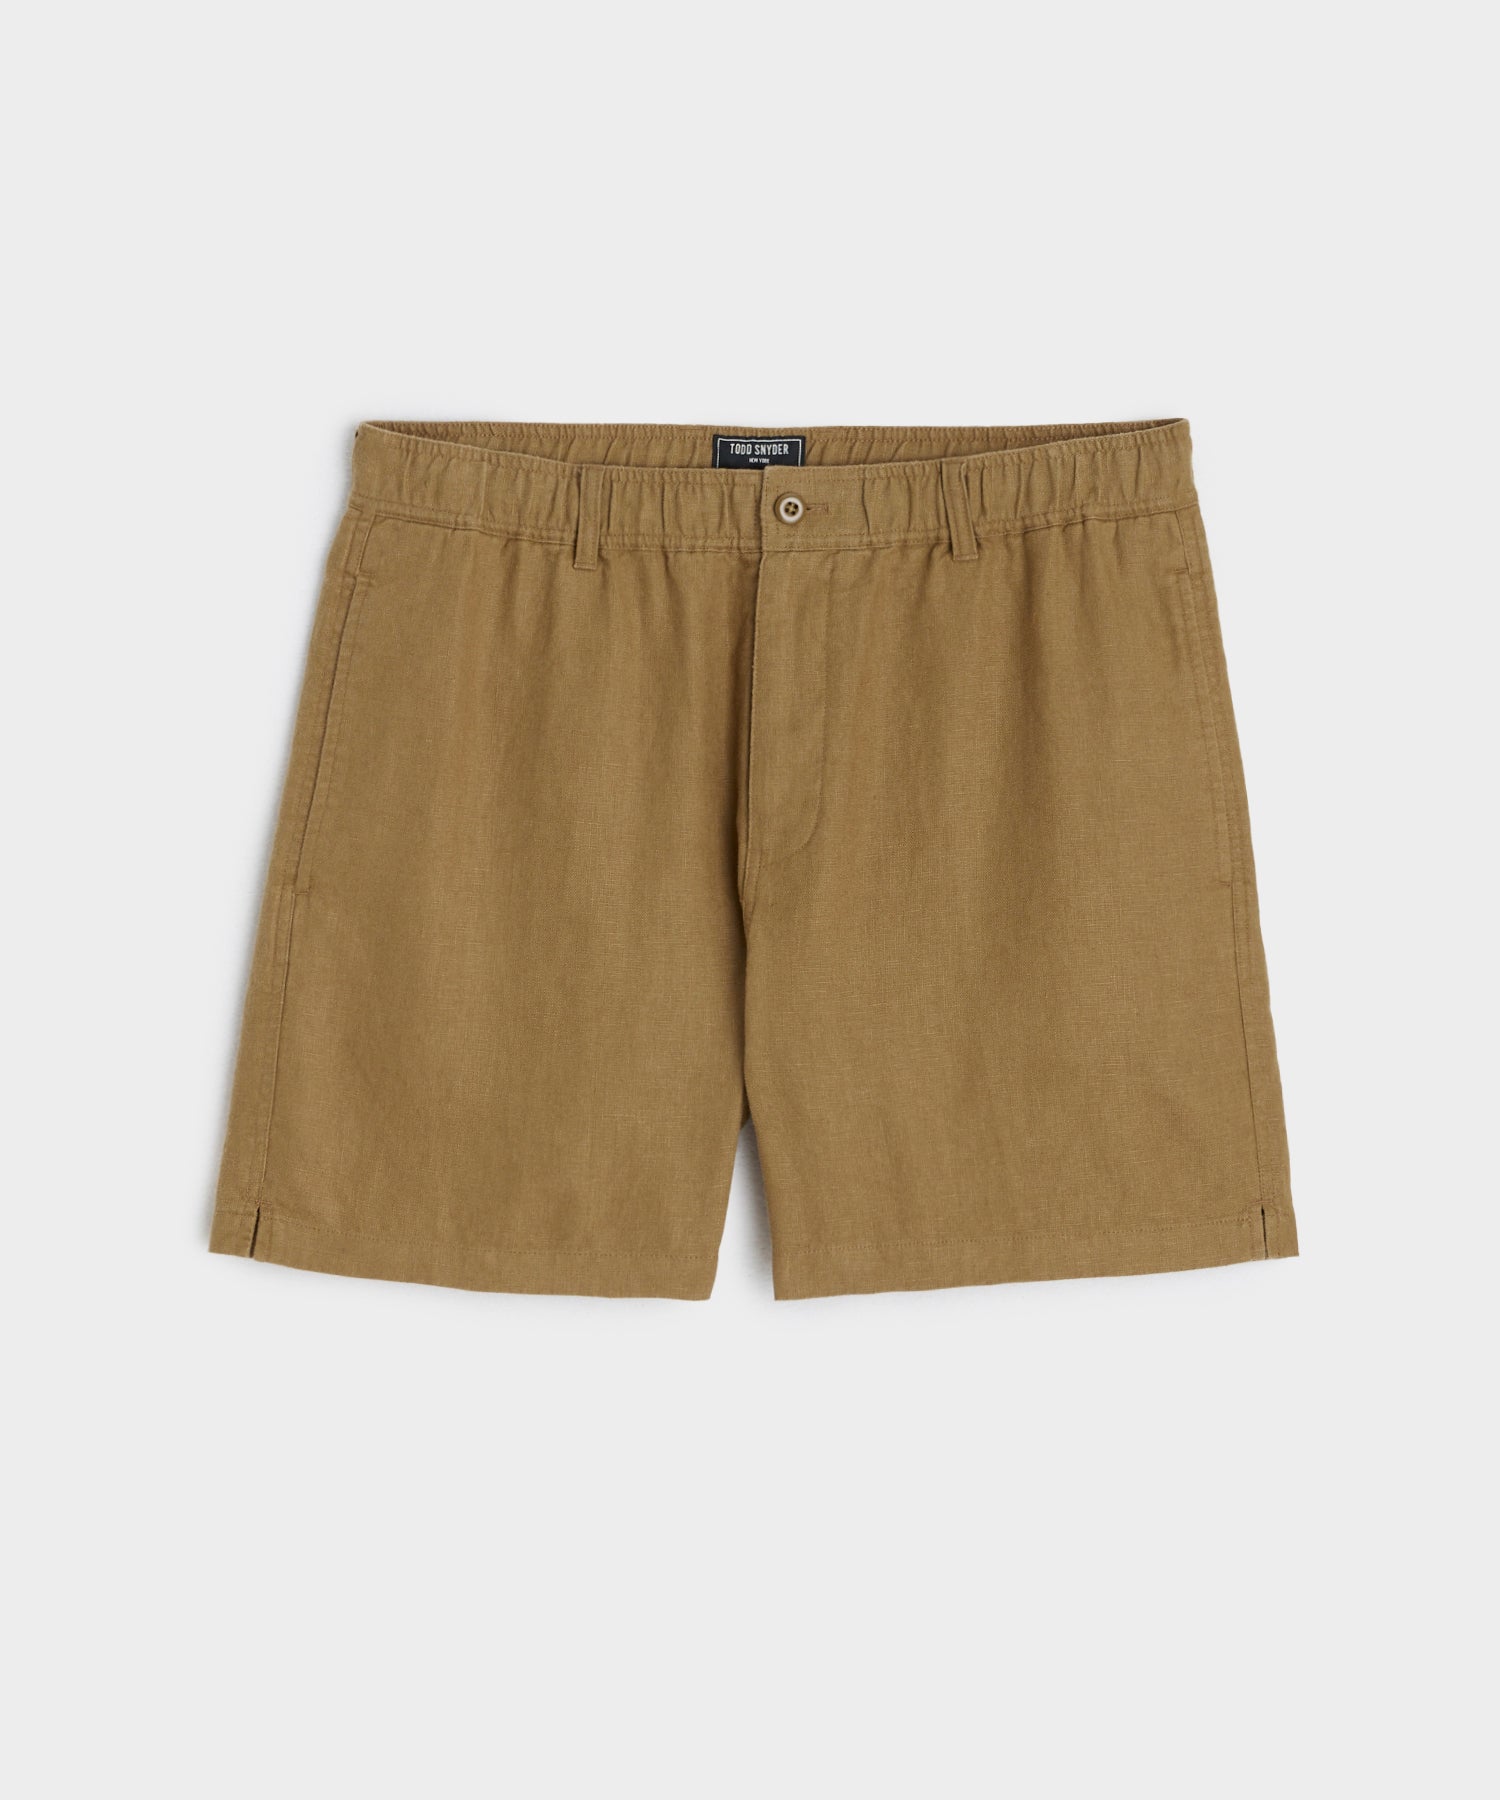 5" Linen Beachcomber Short in Vintage Brown